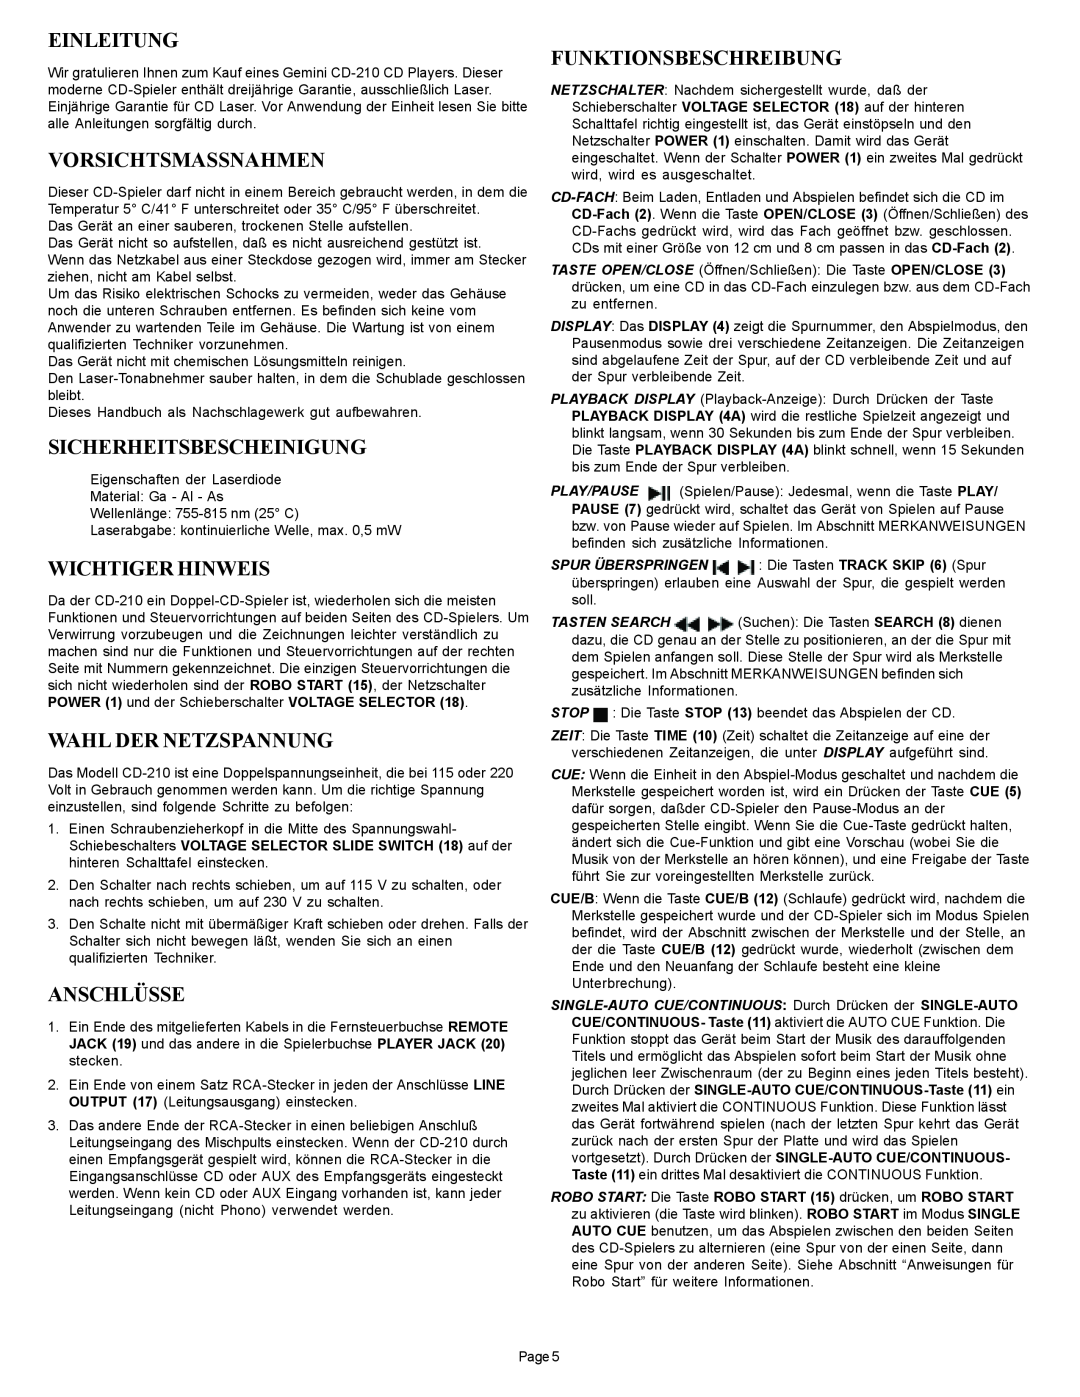 Gemini CD-210 manual Einleitung, Vorsichtsmassnahmen, Sicherheitsbescheinigung, Wichtiger Hinweis, Wahl Der Netzspannung 